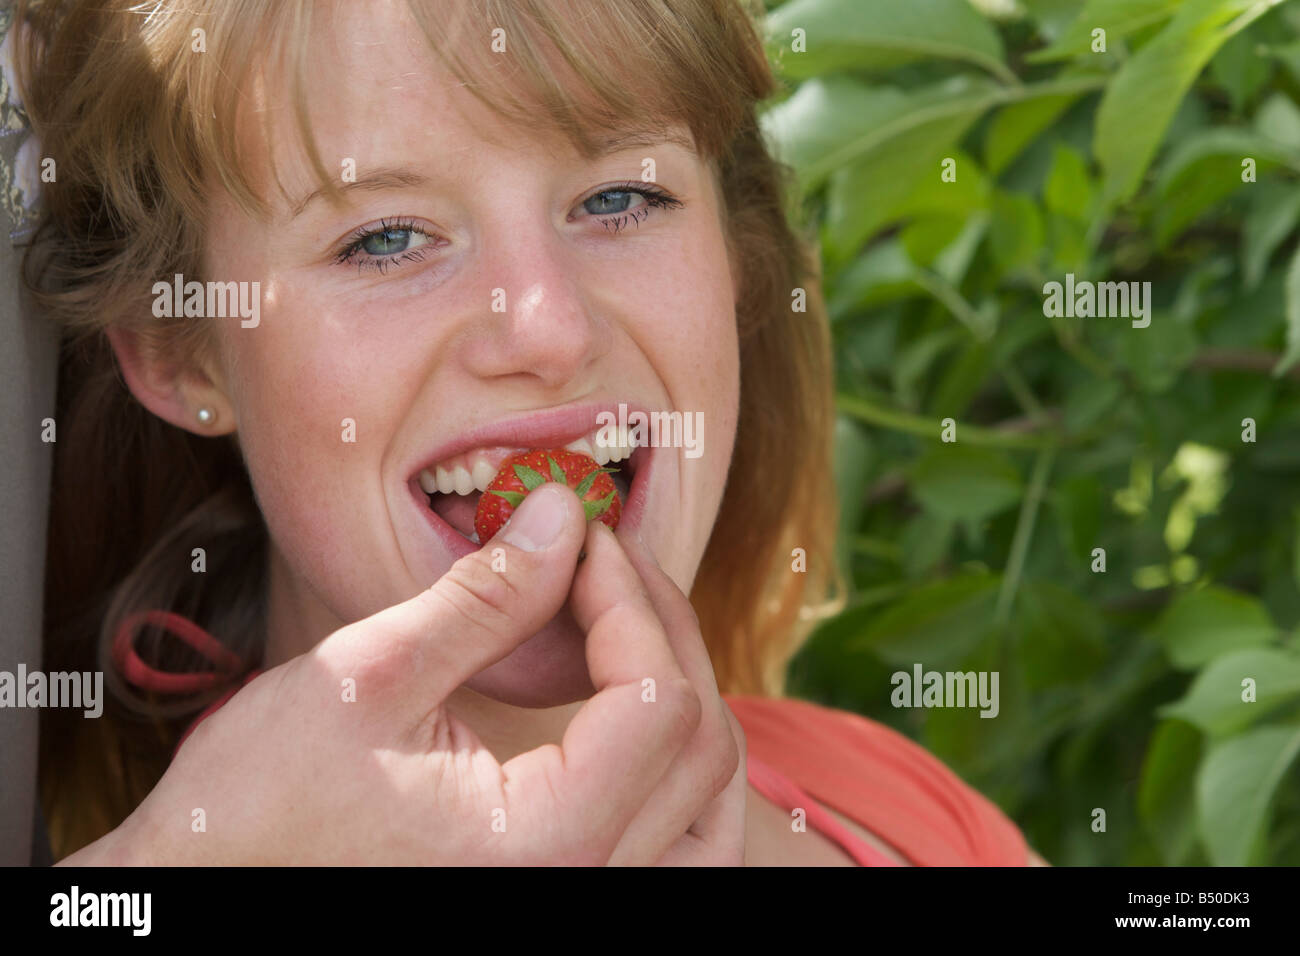 Ragazza giovane ottengono alimentati con una fragola - Mädchen wird mit einer Erdbeere gefüttert Foto Stock